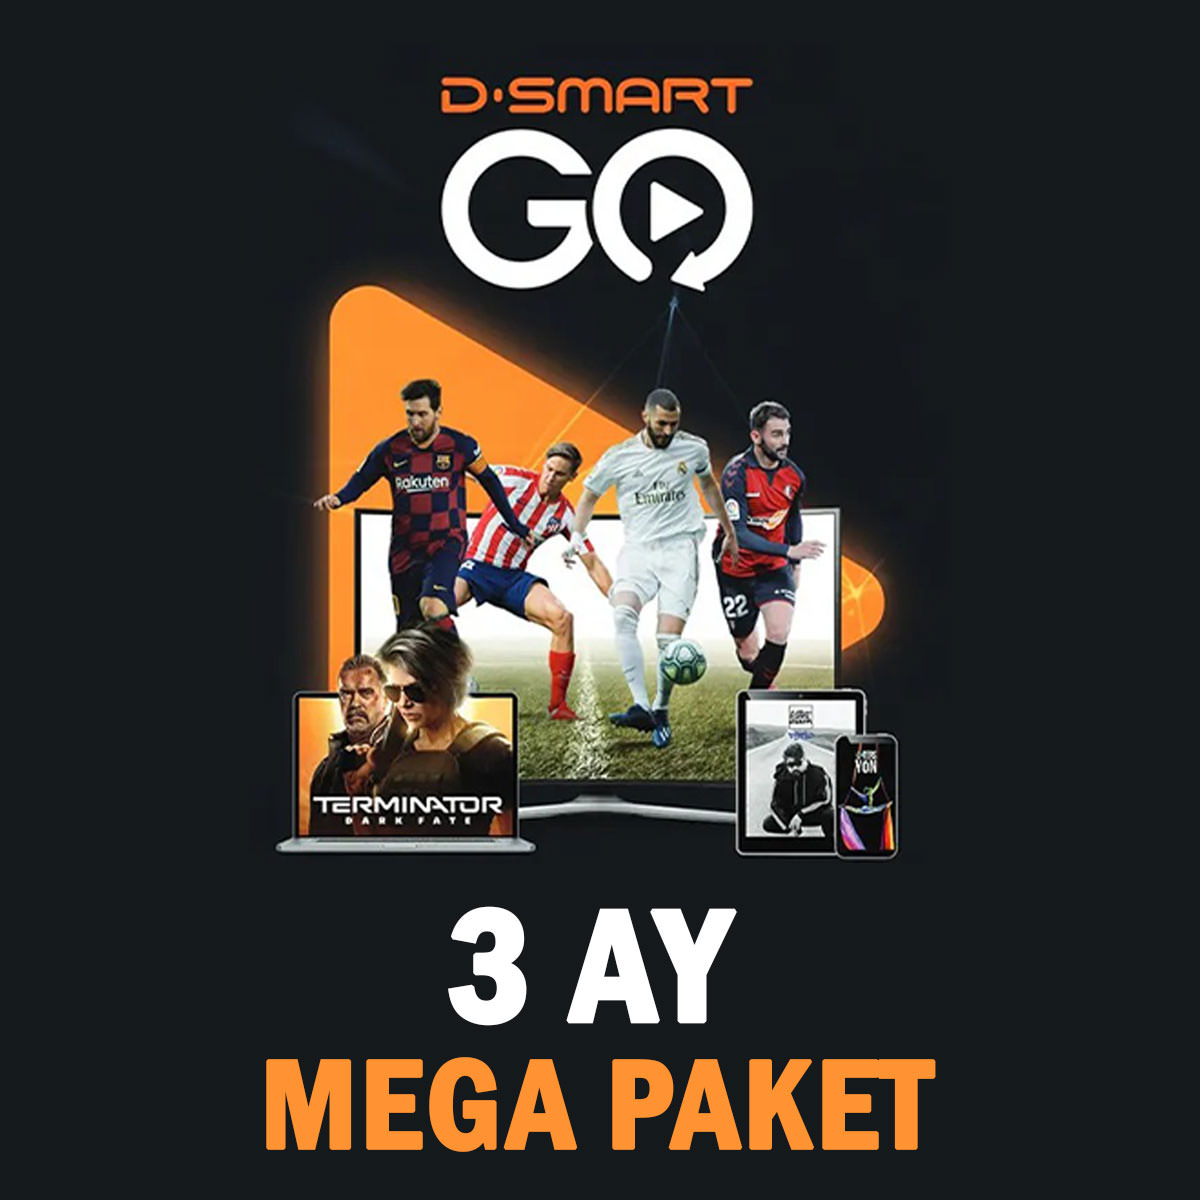 D-Smart GO Üyelik (Mega Paket) 3 AY